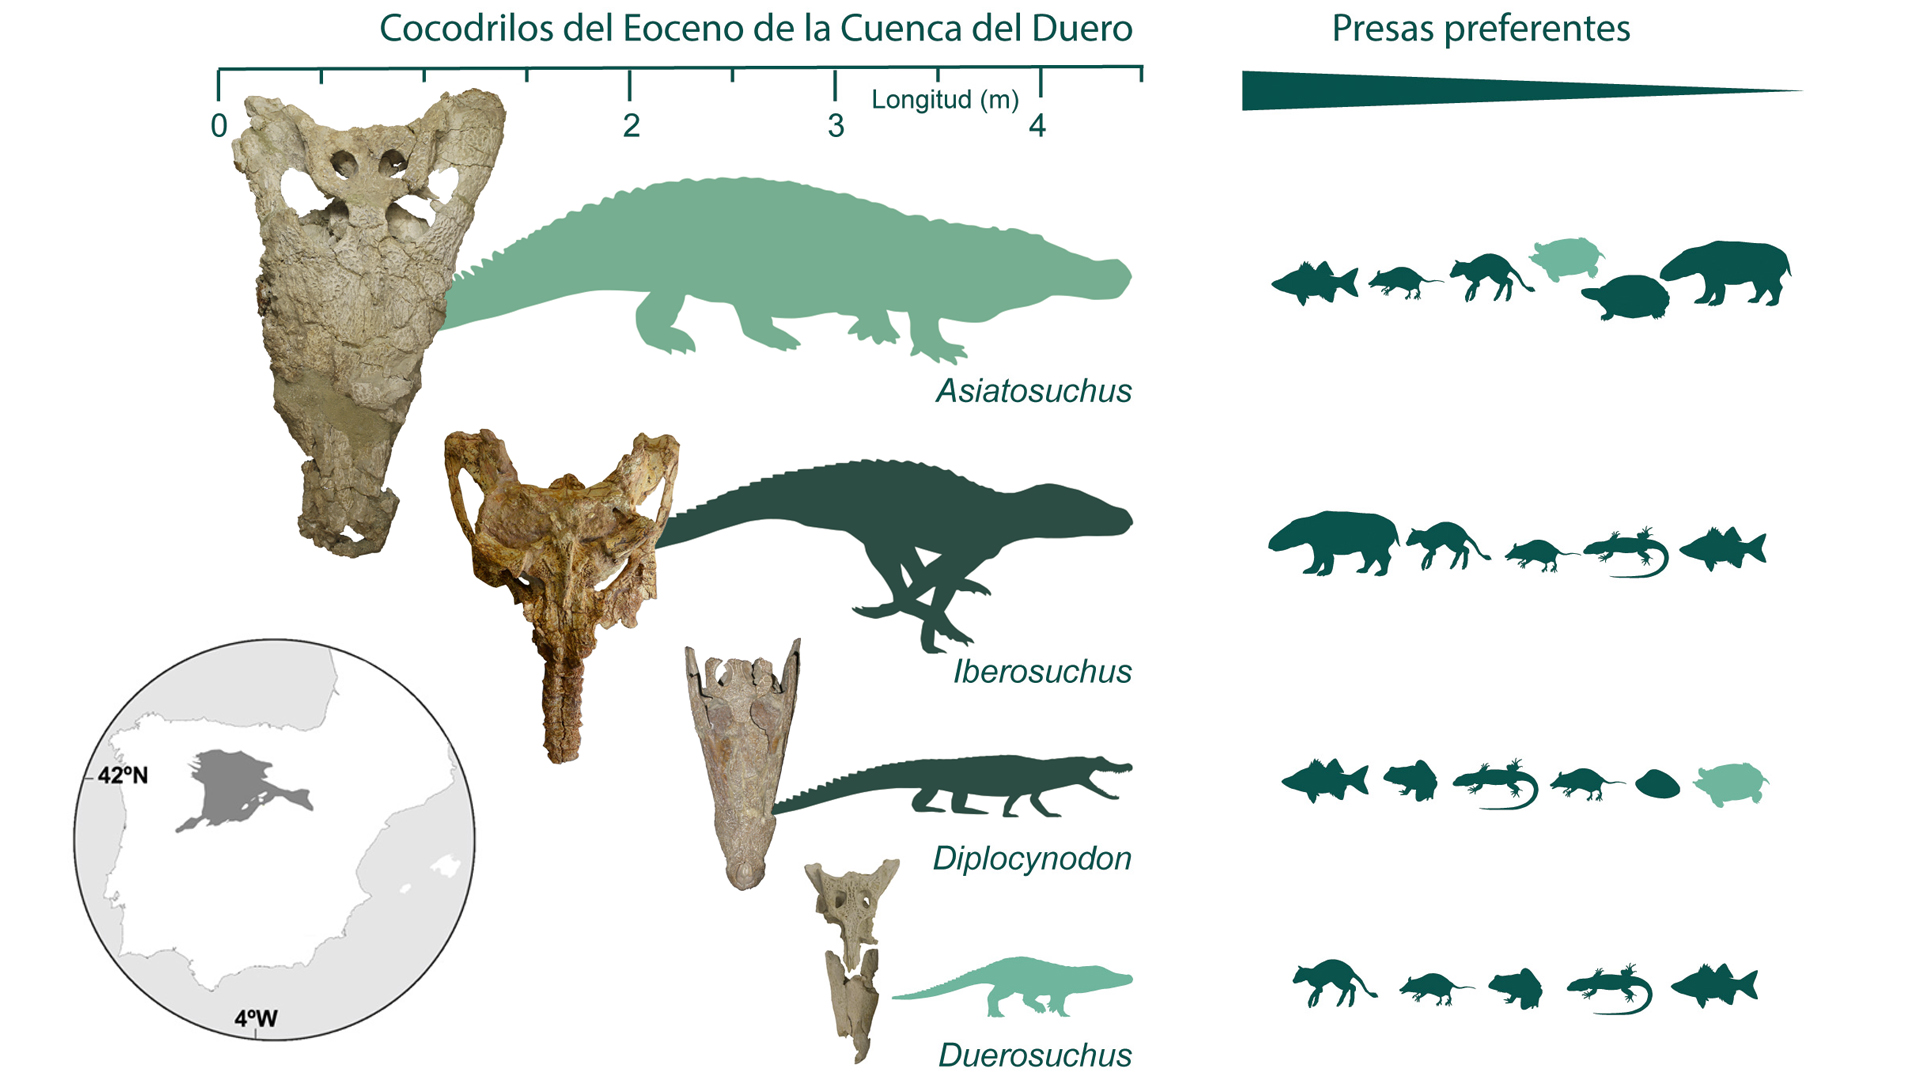 Esquema que muestra la diversidad de cocodrilos del Eoceno de la Cuenca del Duero.